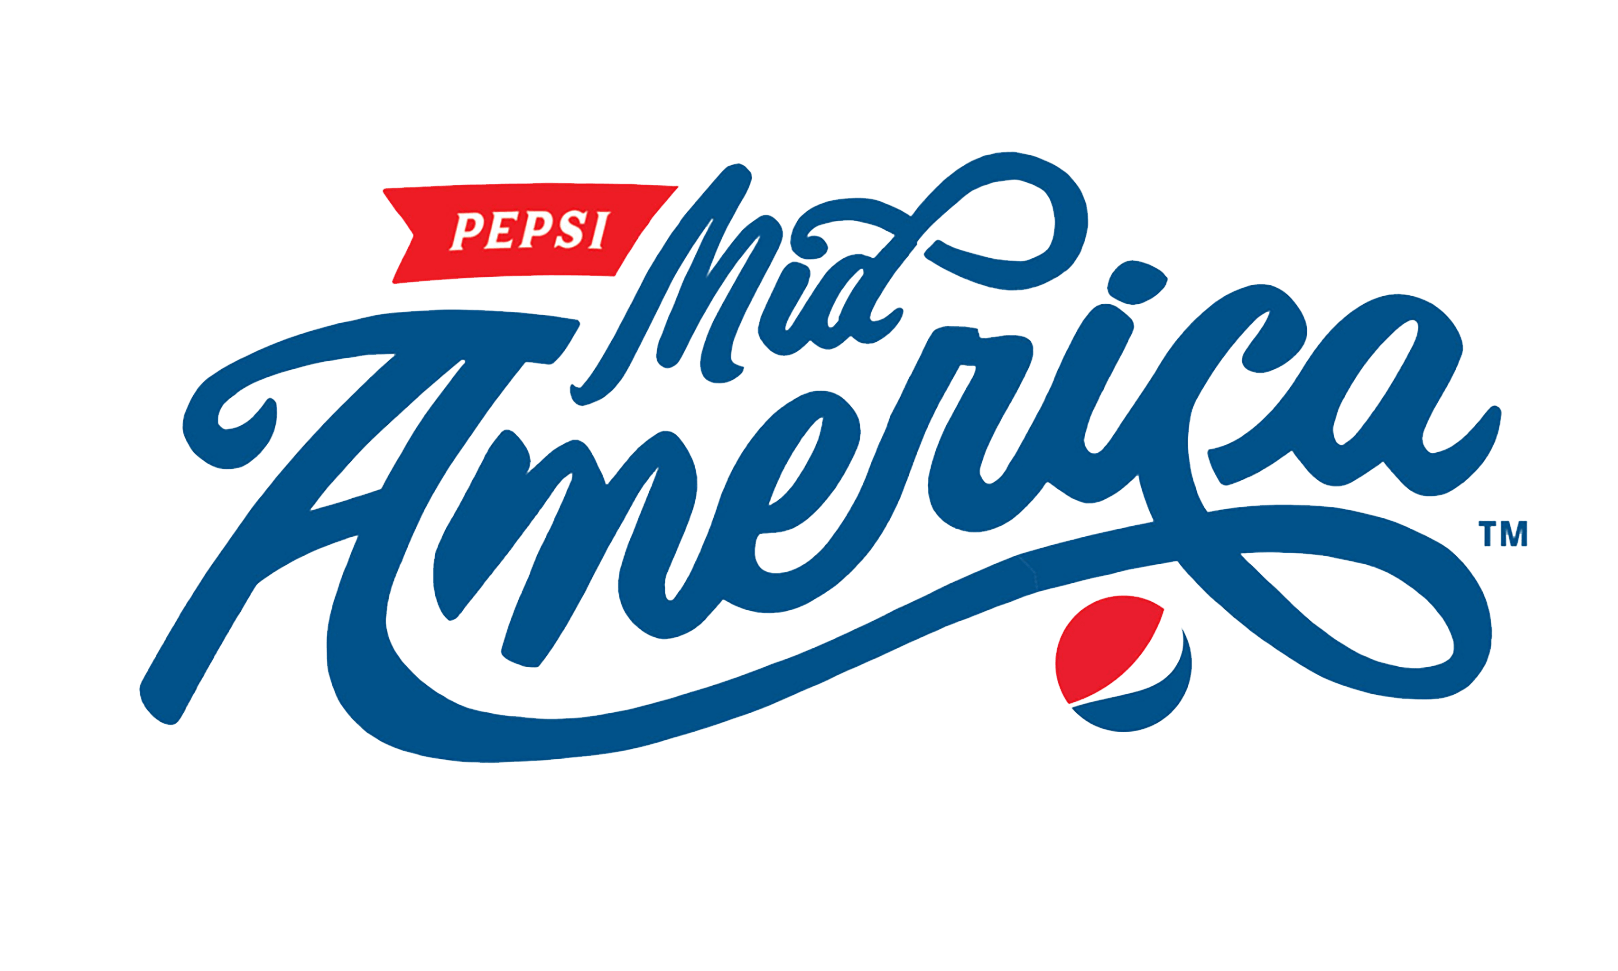 Pepsi Mid-America